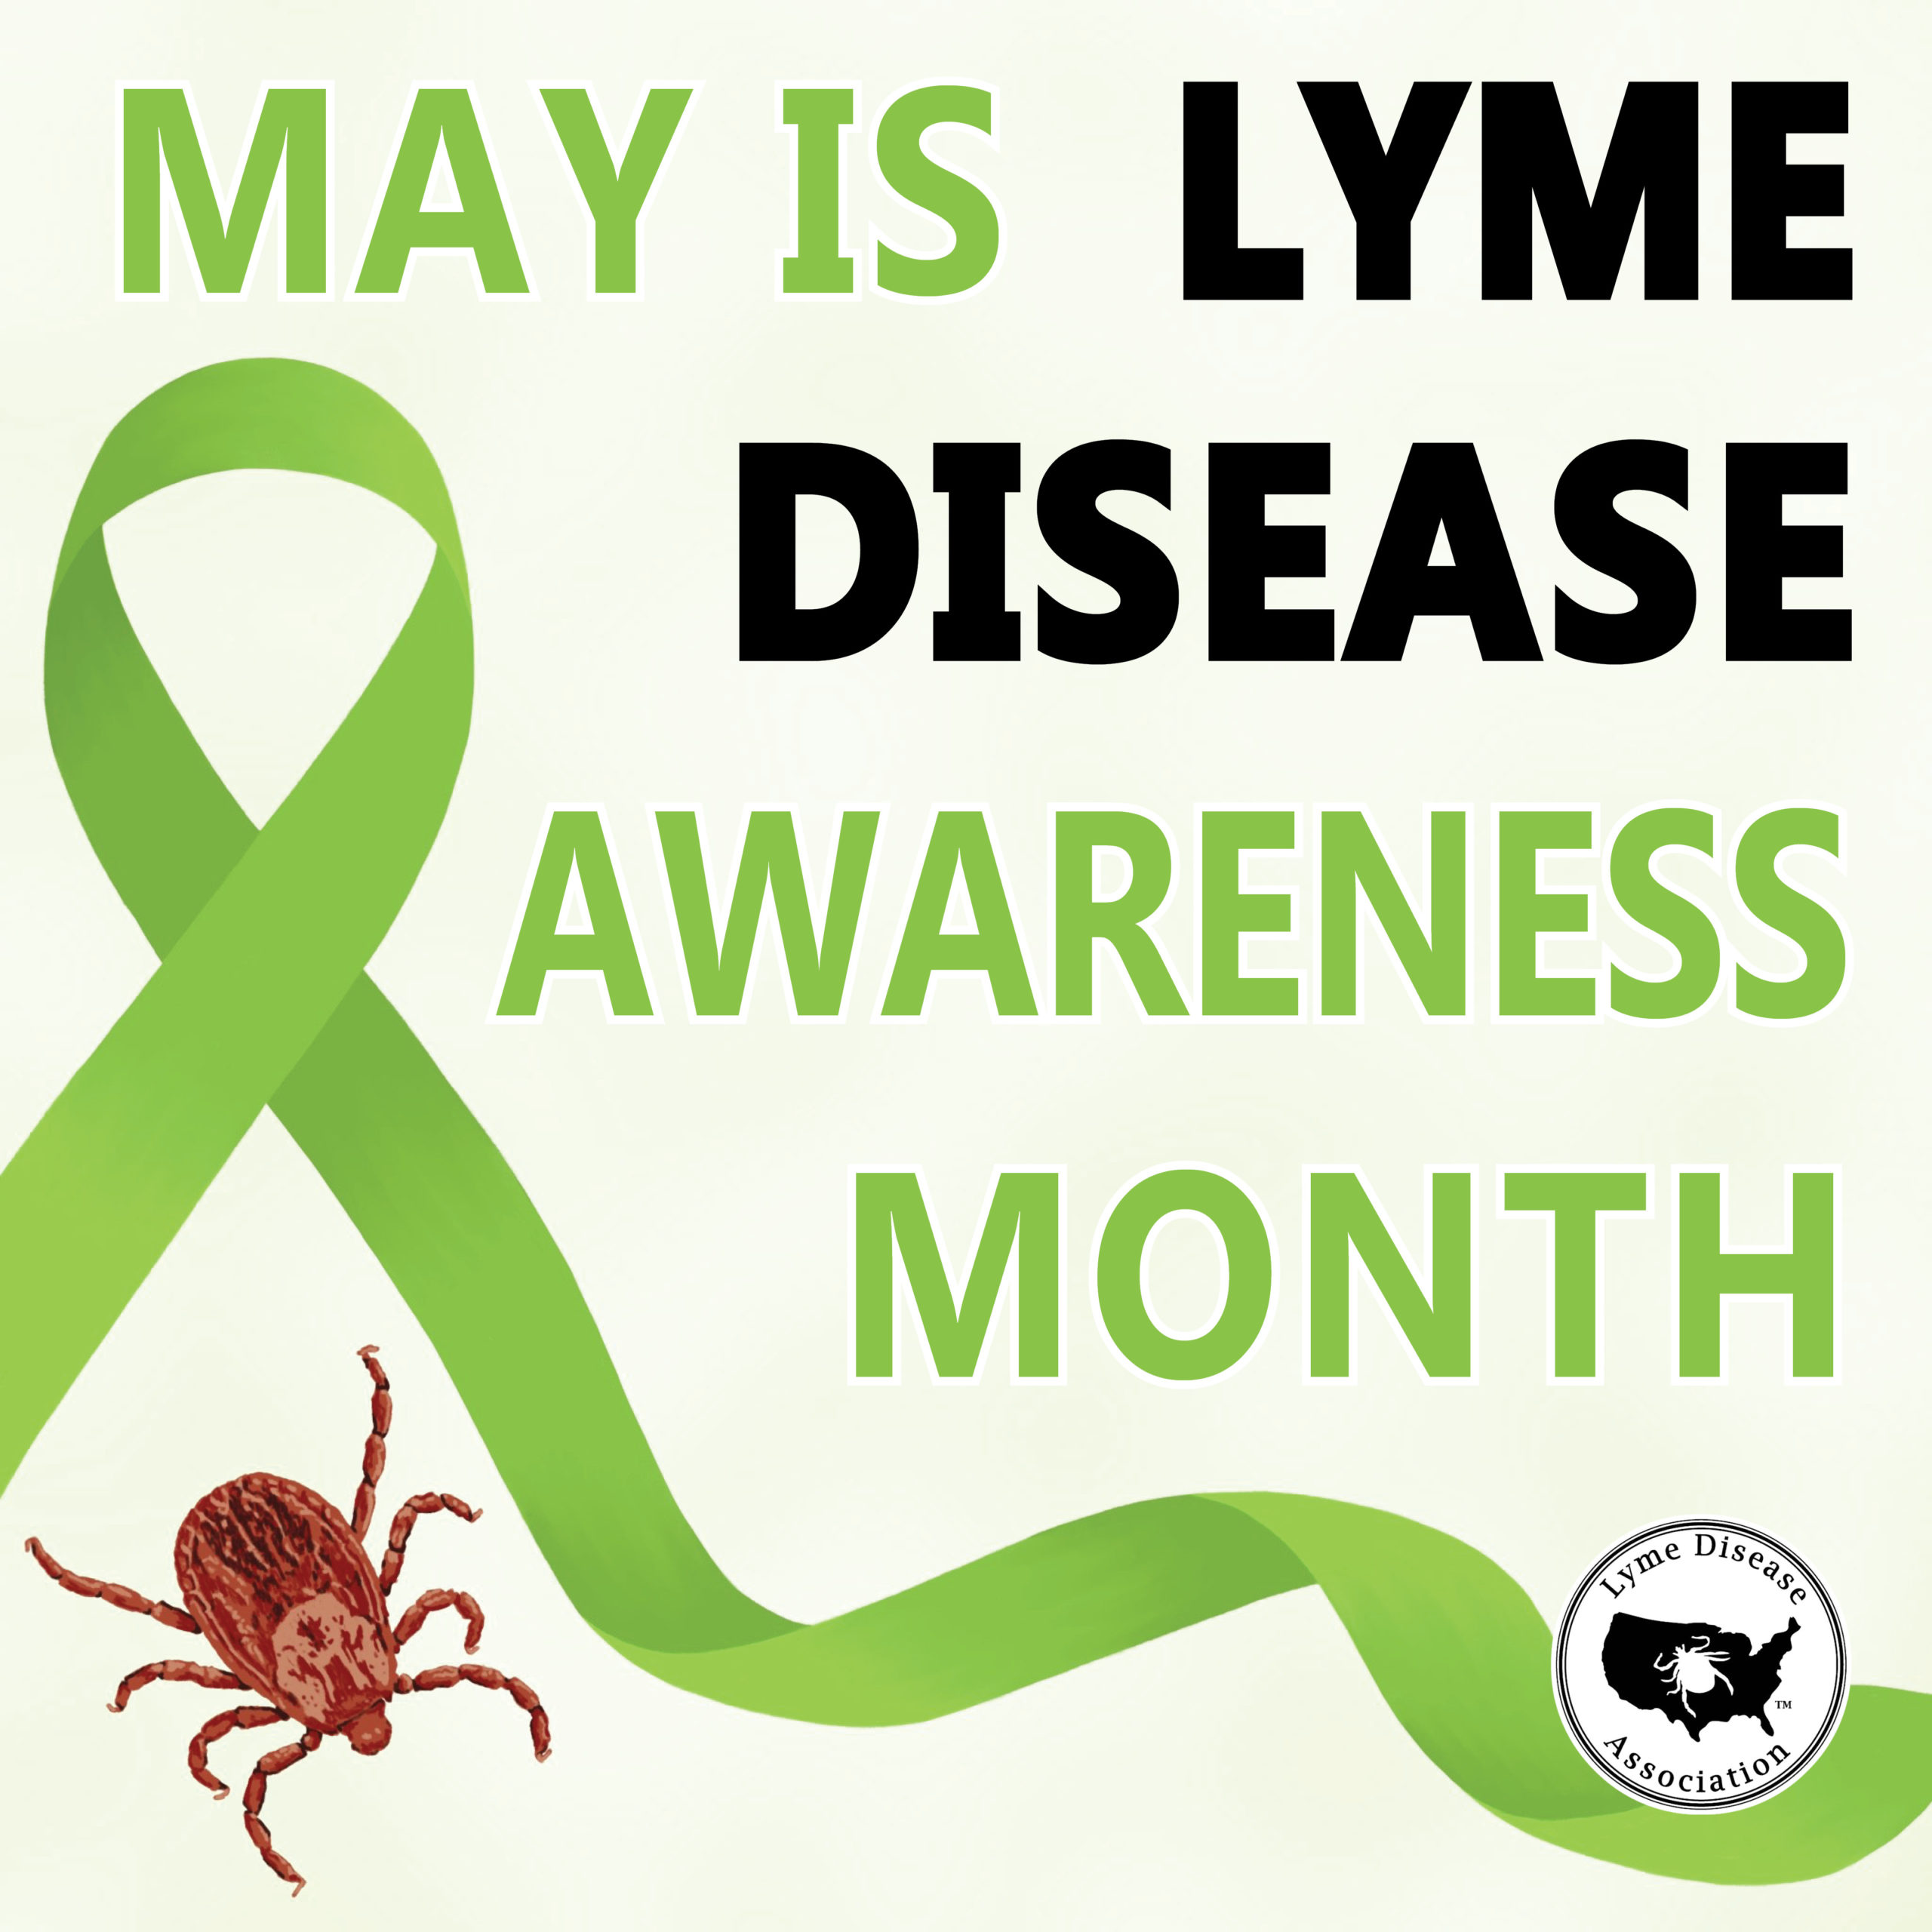 Lyme Disease awareness month